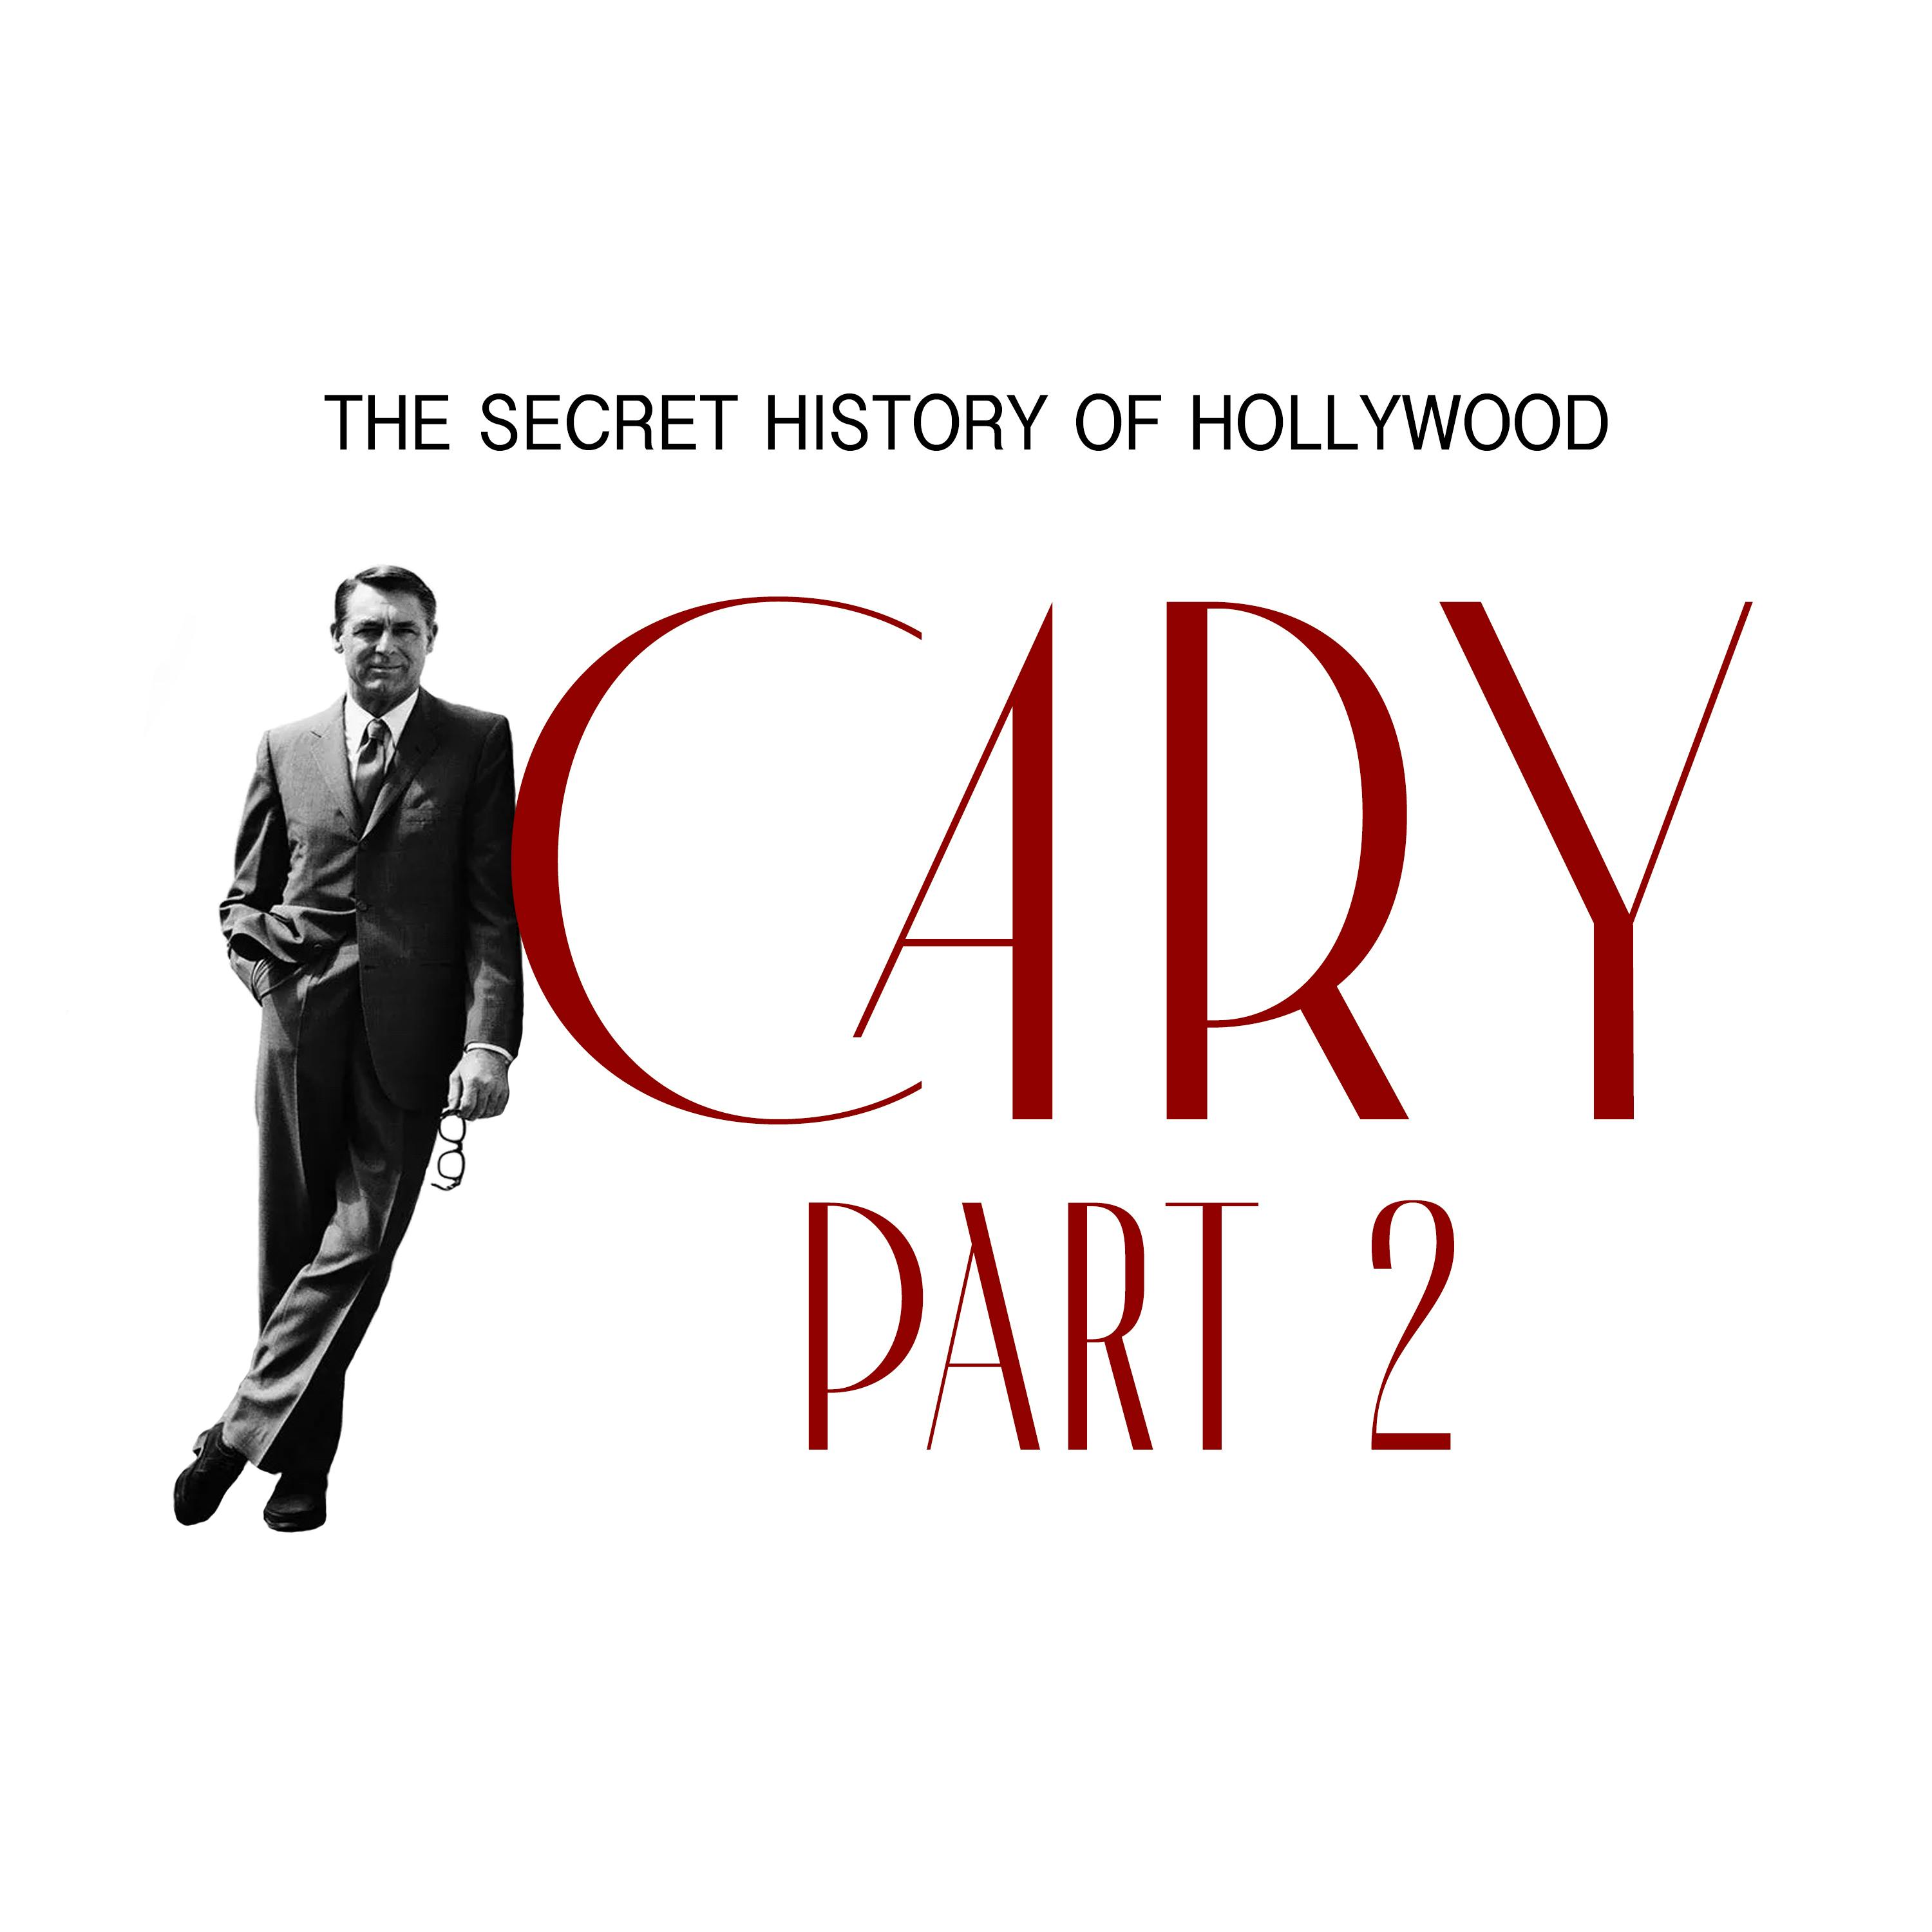 Cary: Part 2 - Vol I